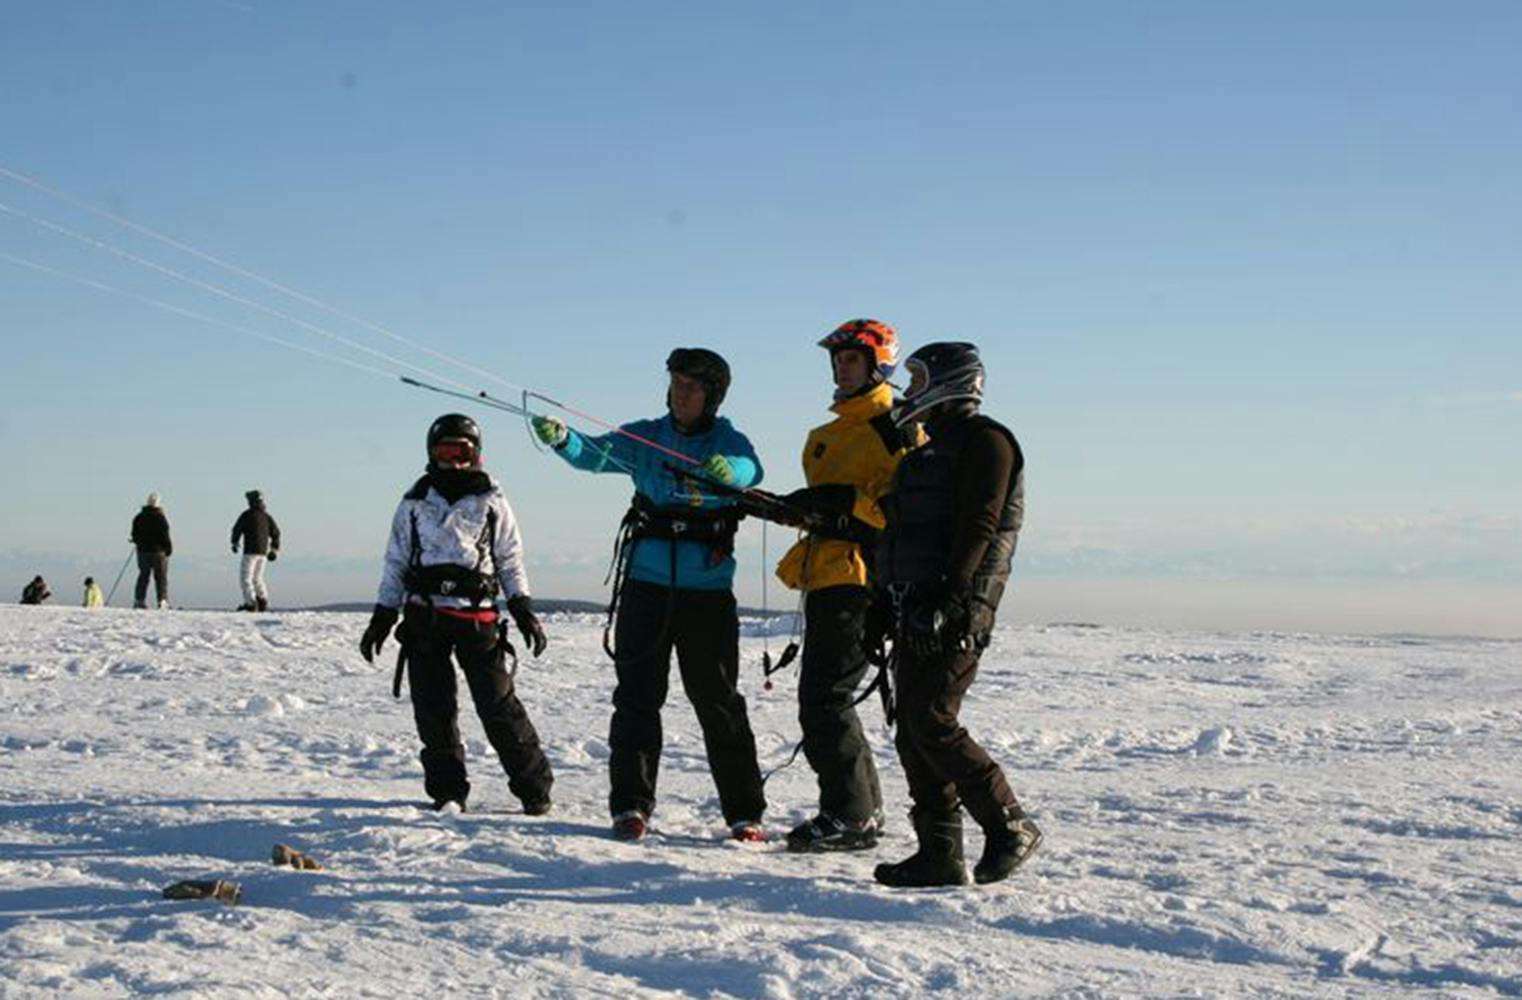 Snowkite-Kurs | 1-Tageskurs für Einsteiger | 4 Std.